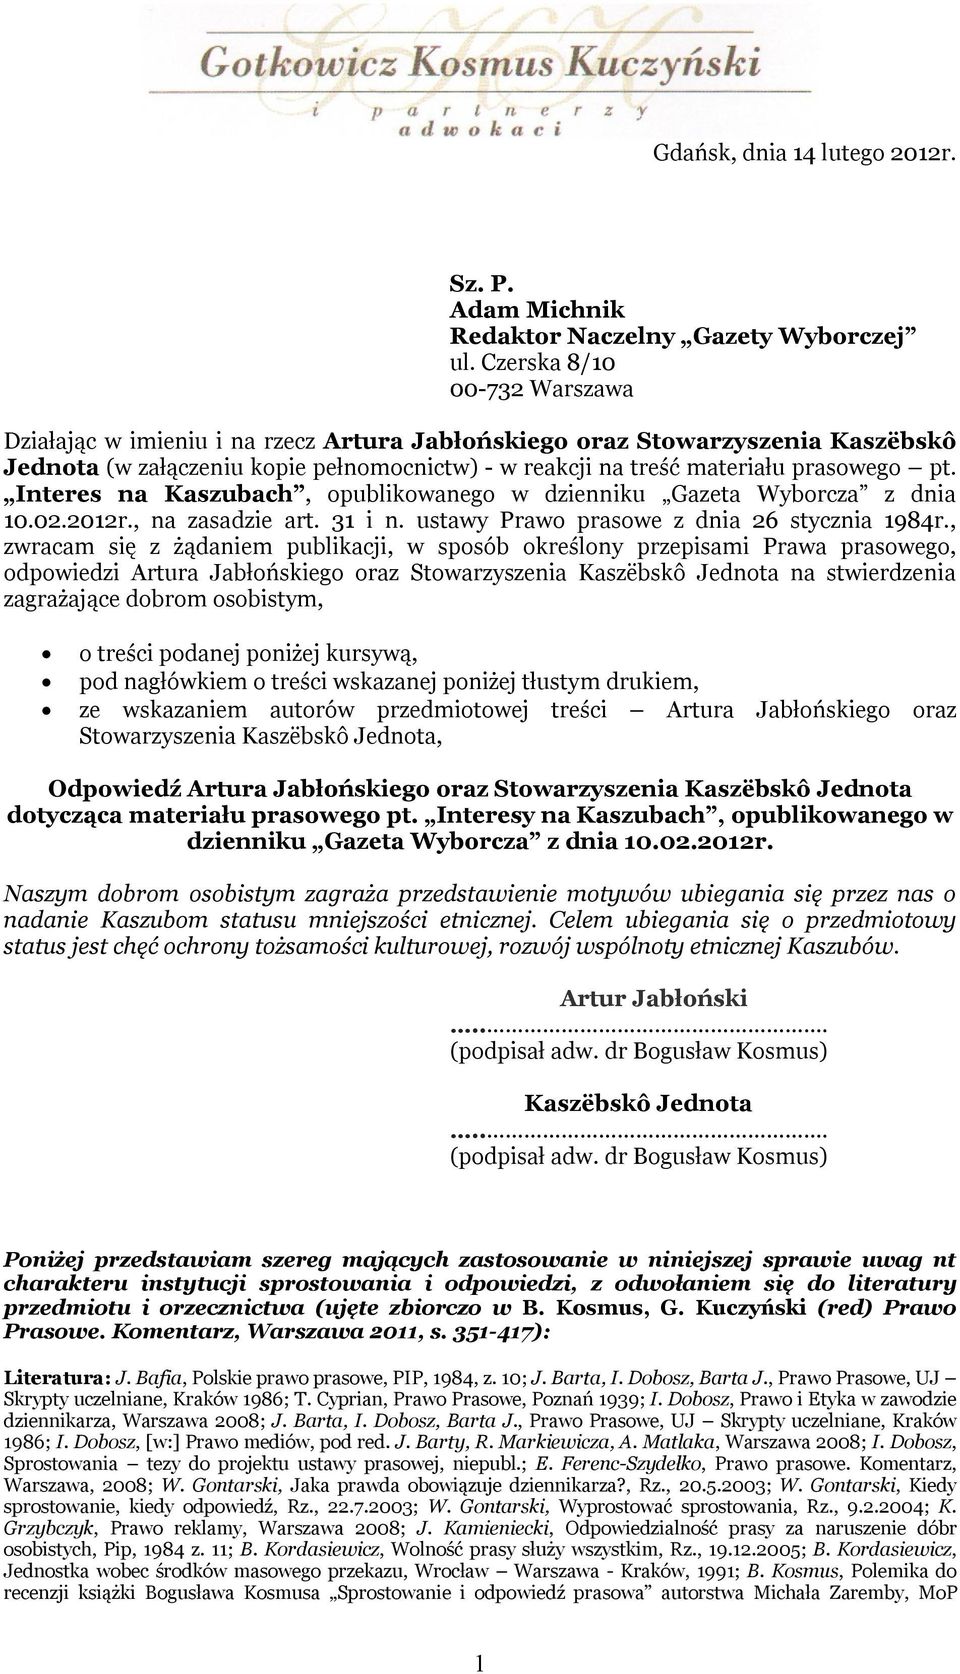 Interes na Kaszubach, opublikowanego w dzienniku Gazeta Wyborcza z dnia 10.02.2012r., na zasadzie art. 31 i n. ustawy Prawo prasowe z dnia 26 stycznia 1984r.